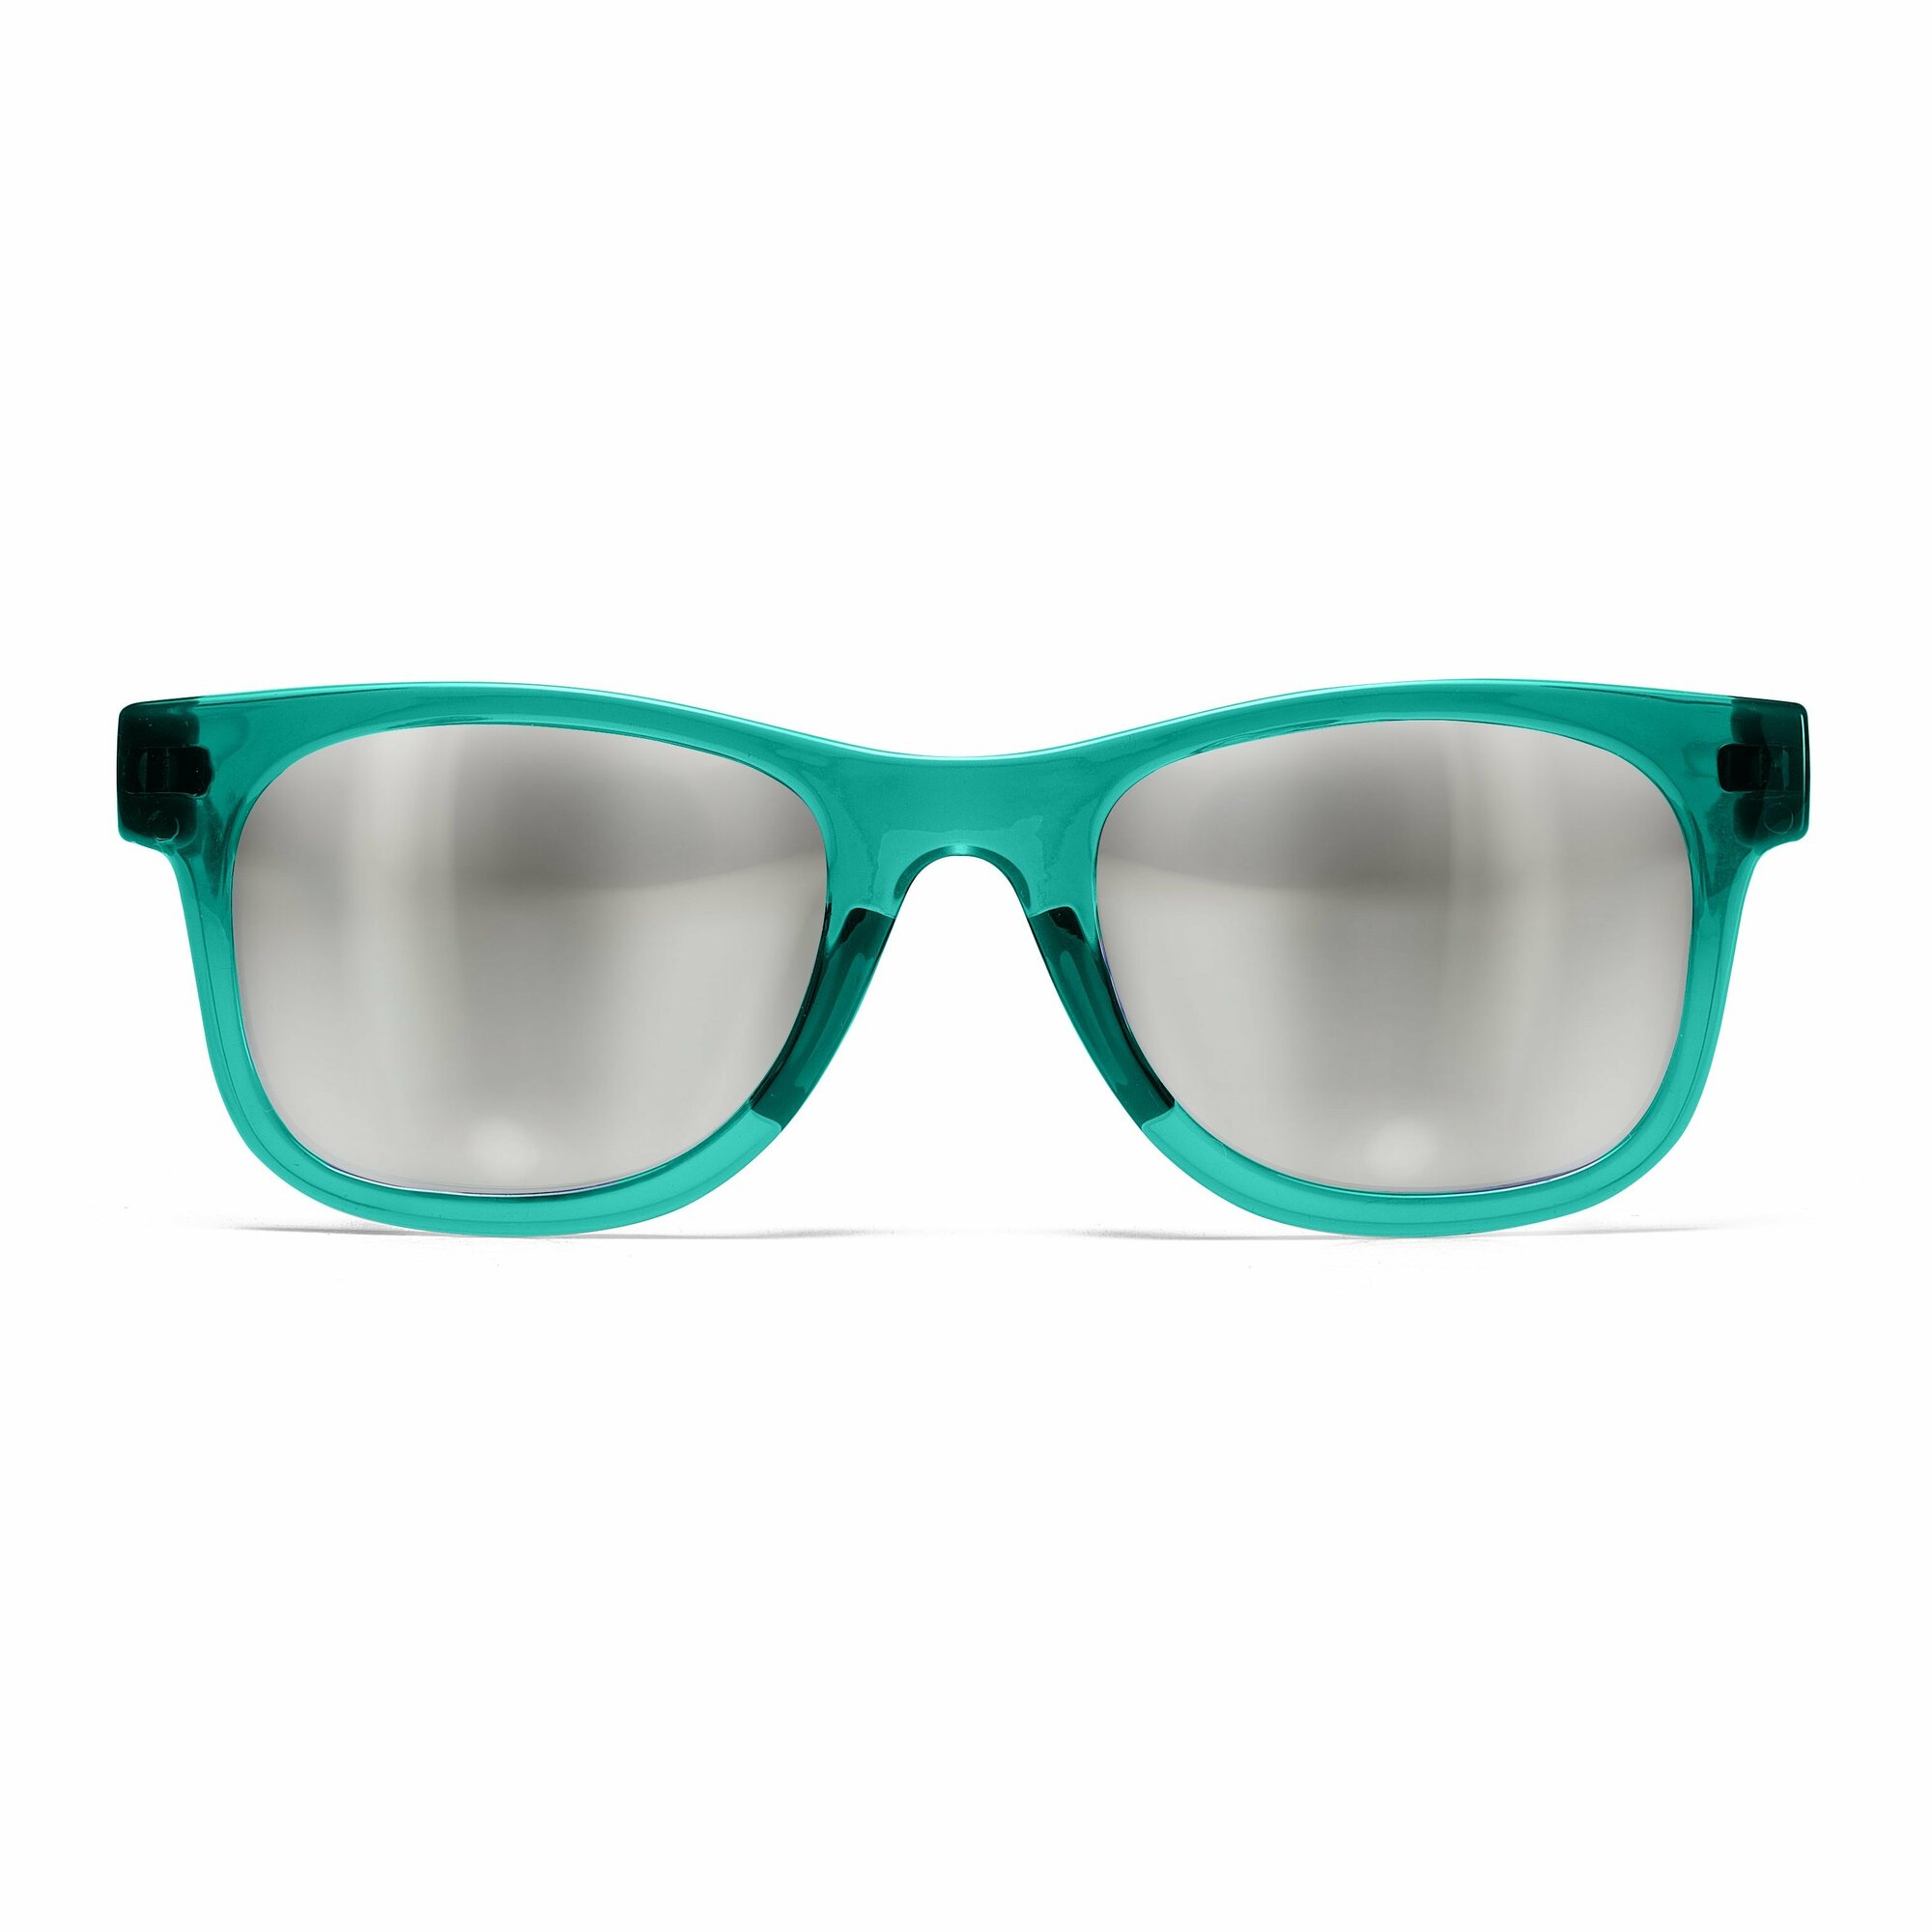 Chicco Slnečné okuliare  MY/21, zelená - transparentná, od 24m+